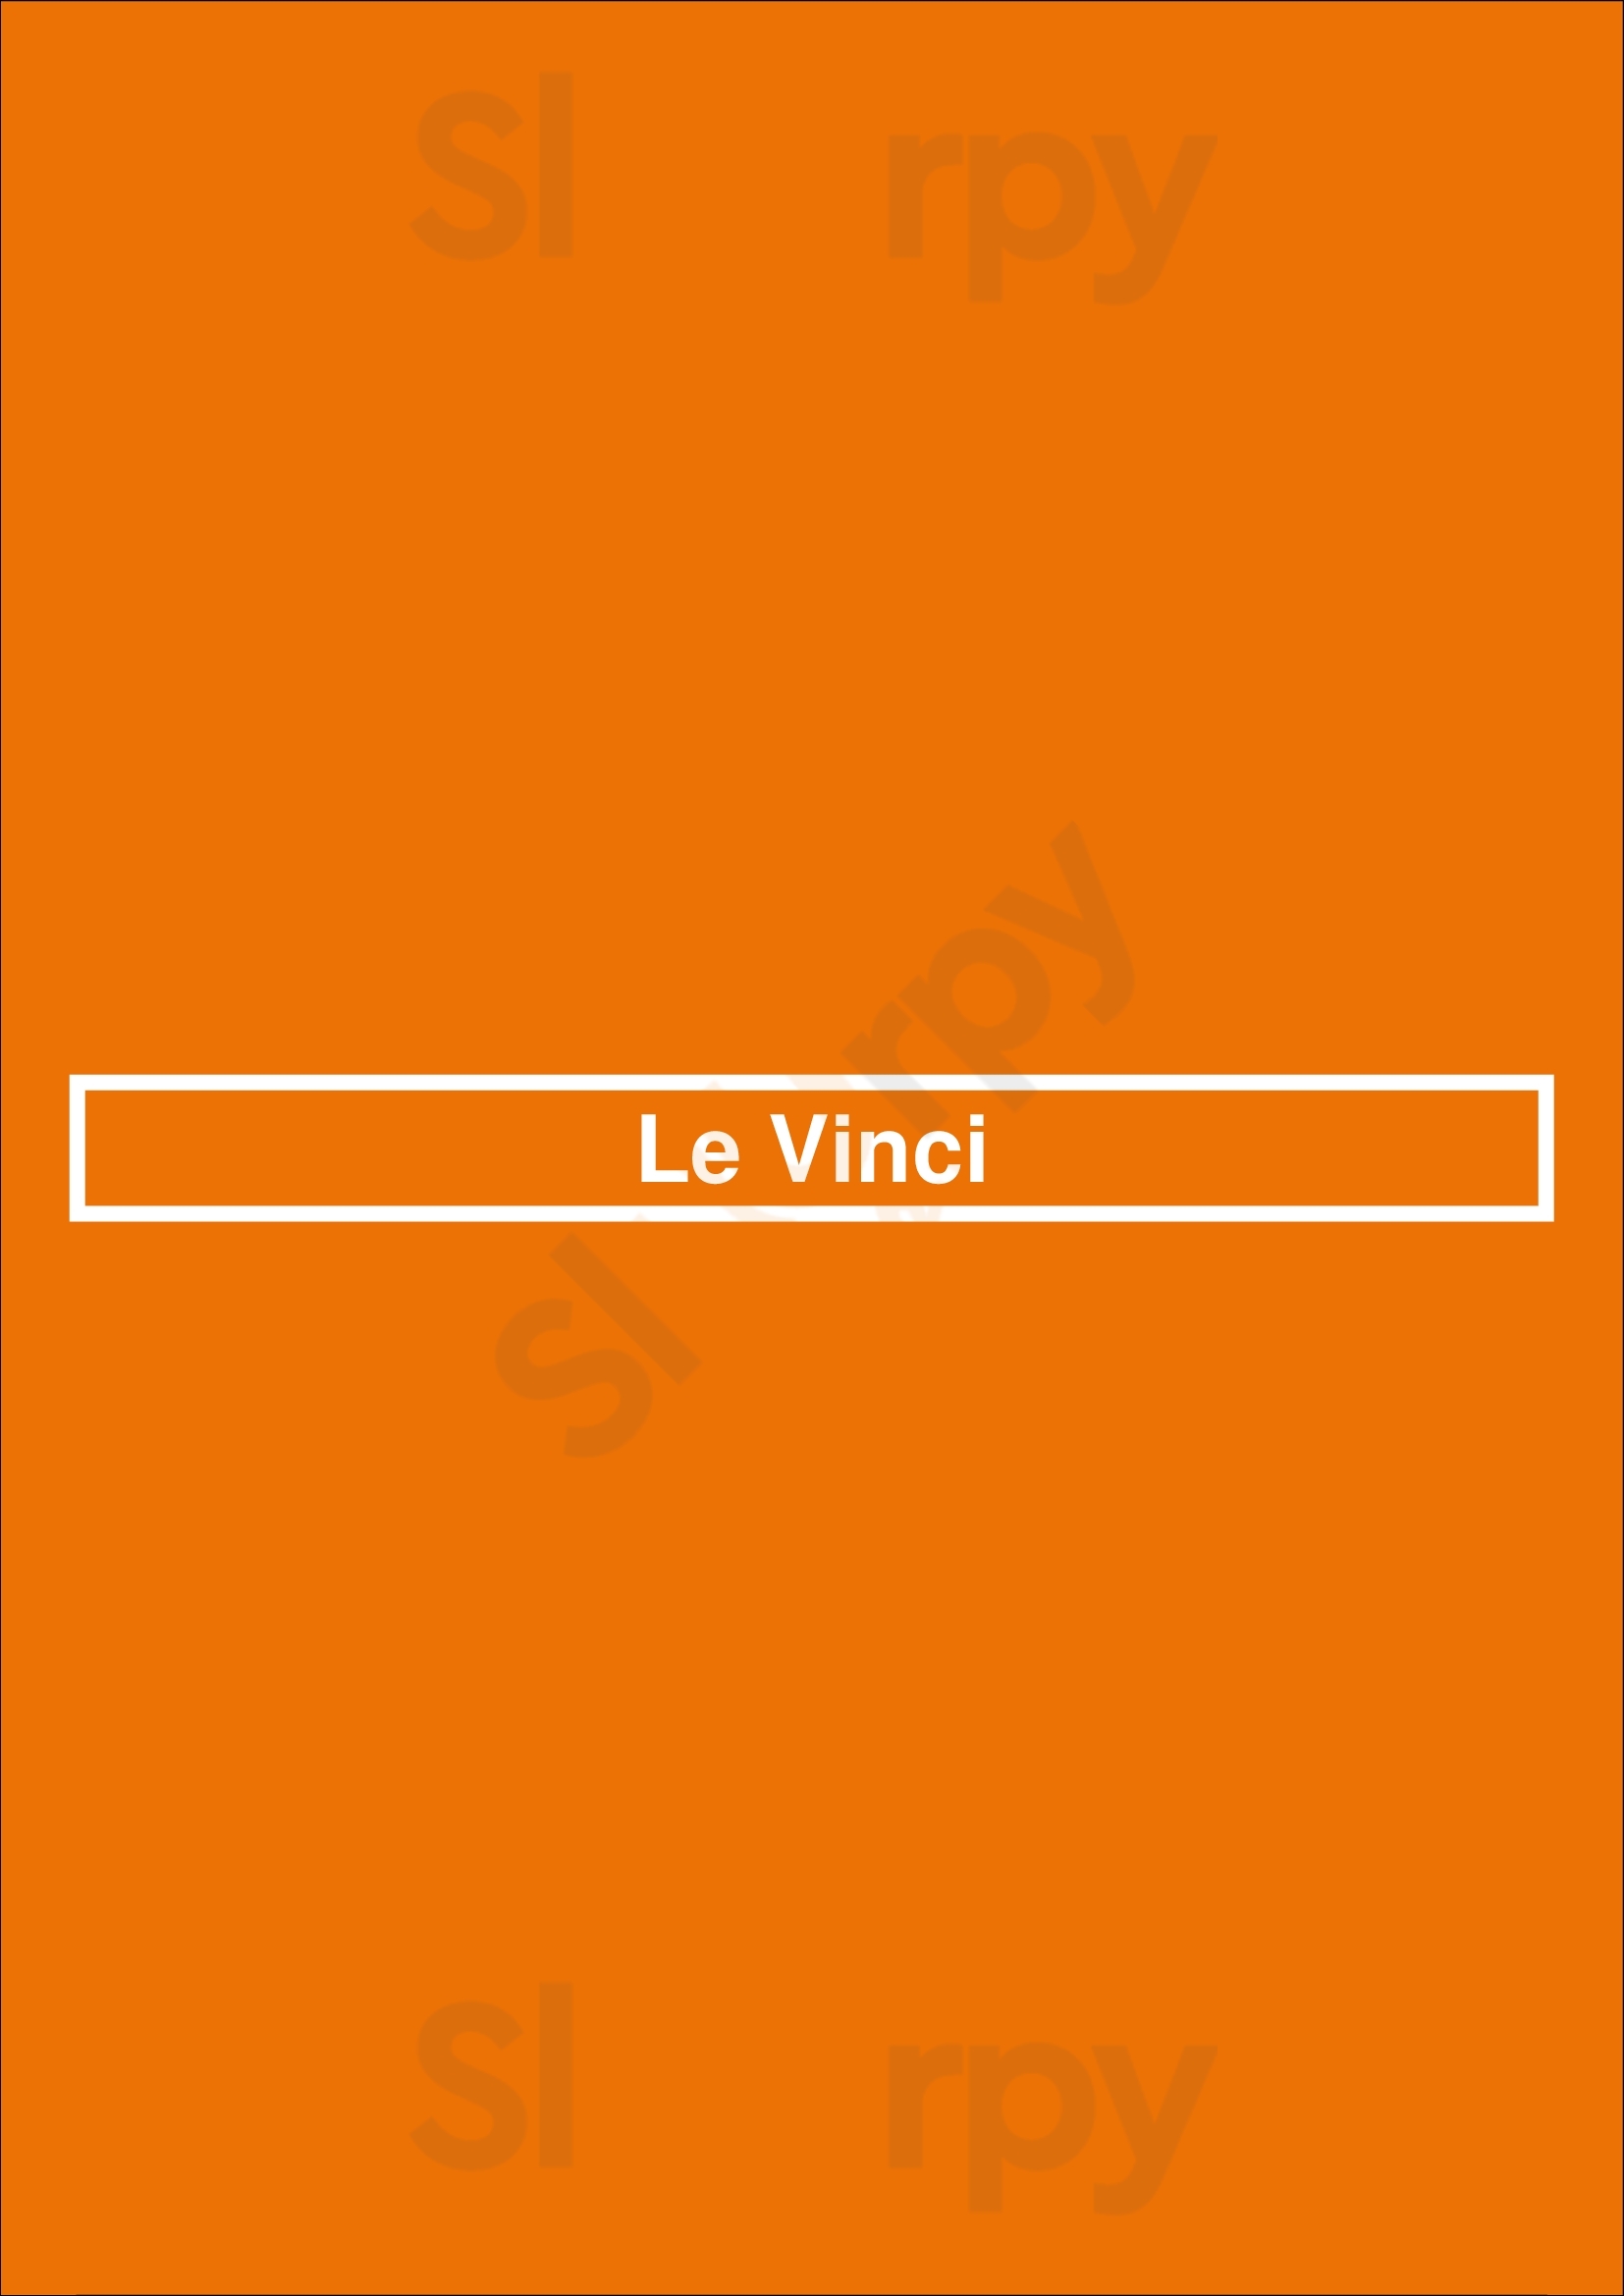 Le Vinci Paris Menu - 1